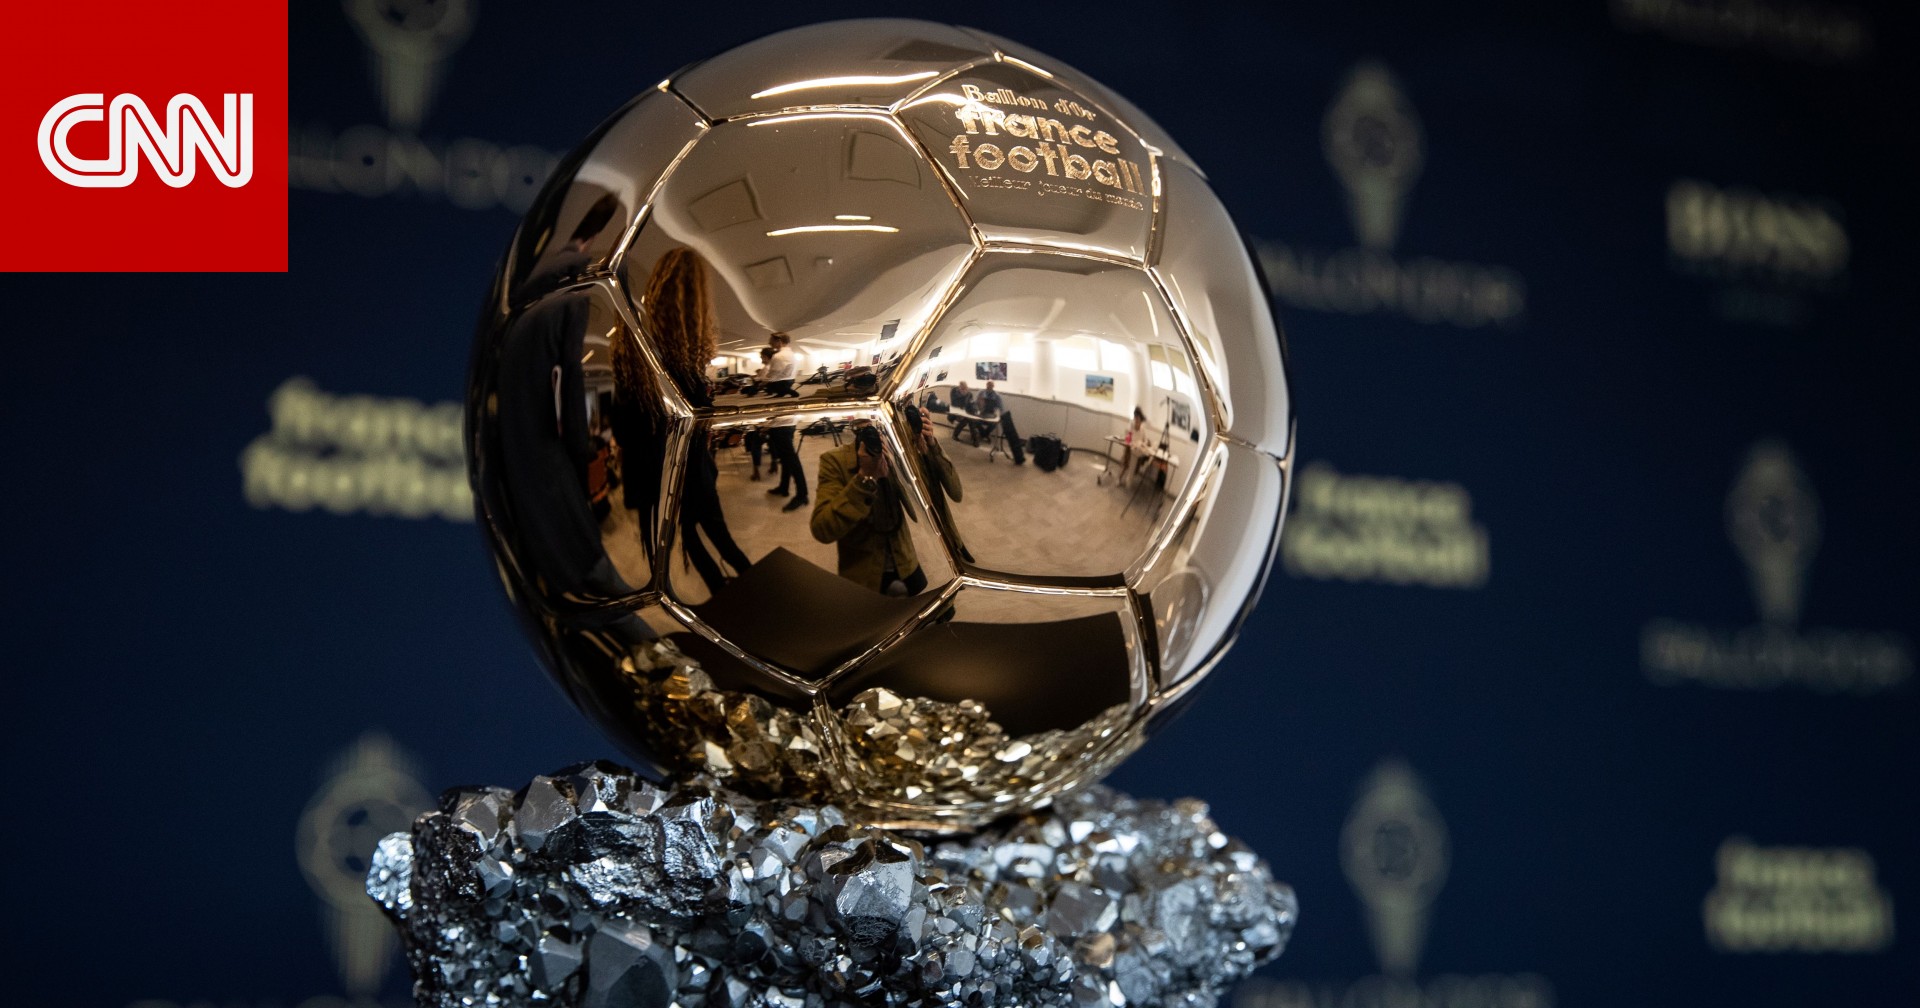 لأول مرة في التاريخ.. “فرانس فوتبول” تُعلن إلغاء جائزة الكرة الذهبية للموسم الحالي